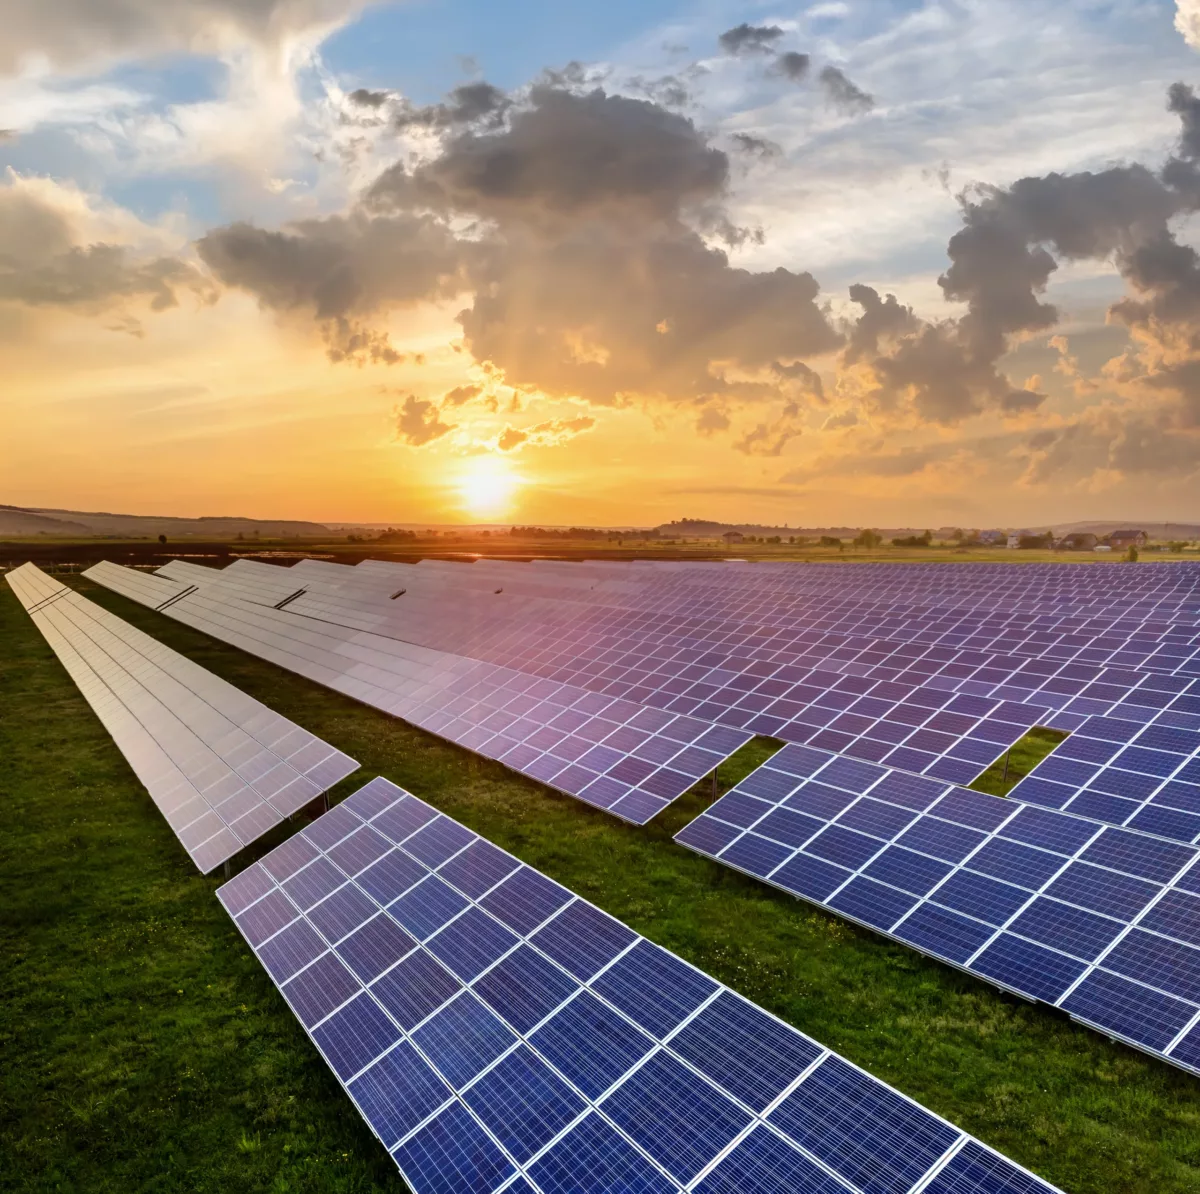 Blue solar photo voltaic panels producing renewable clean energy